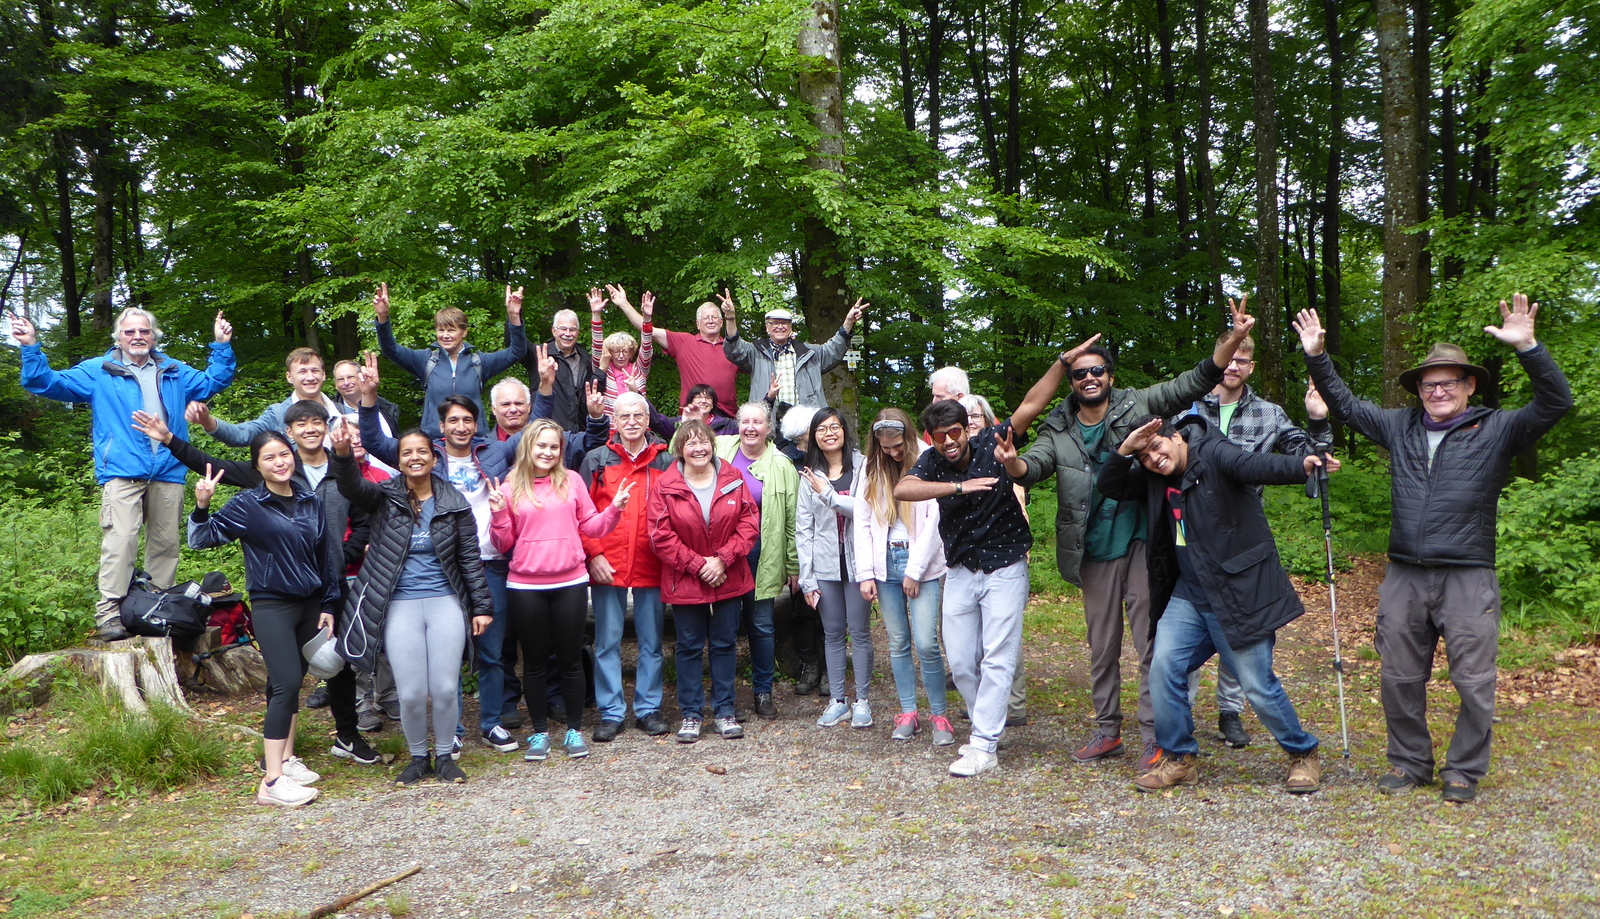 Gruppenfot mit jubelnden Mitgliedern des Senior Service und internationalen Studierende bei ihrer jährlichen Schwarzwaldwanderung.